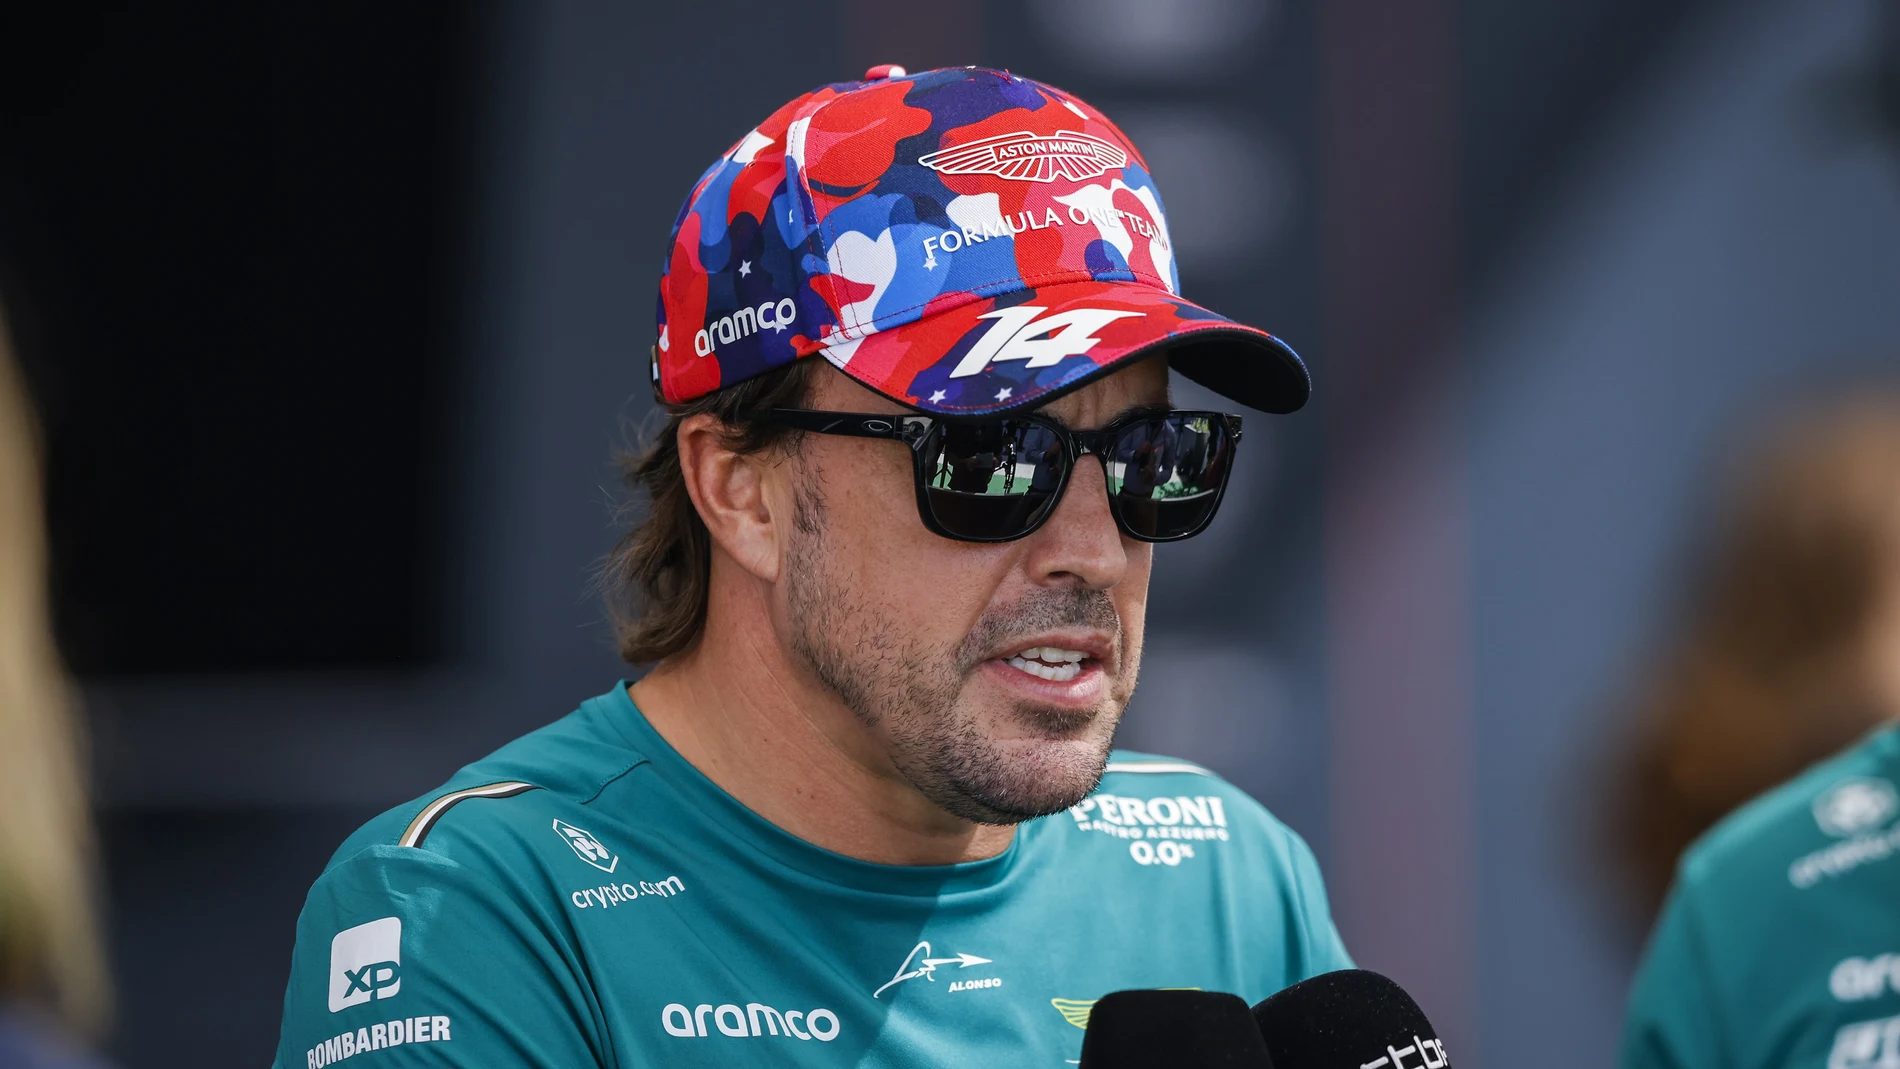 Los memes más duros con Fernando Alonso en el Gran Premio de los Estados Unidos